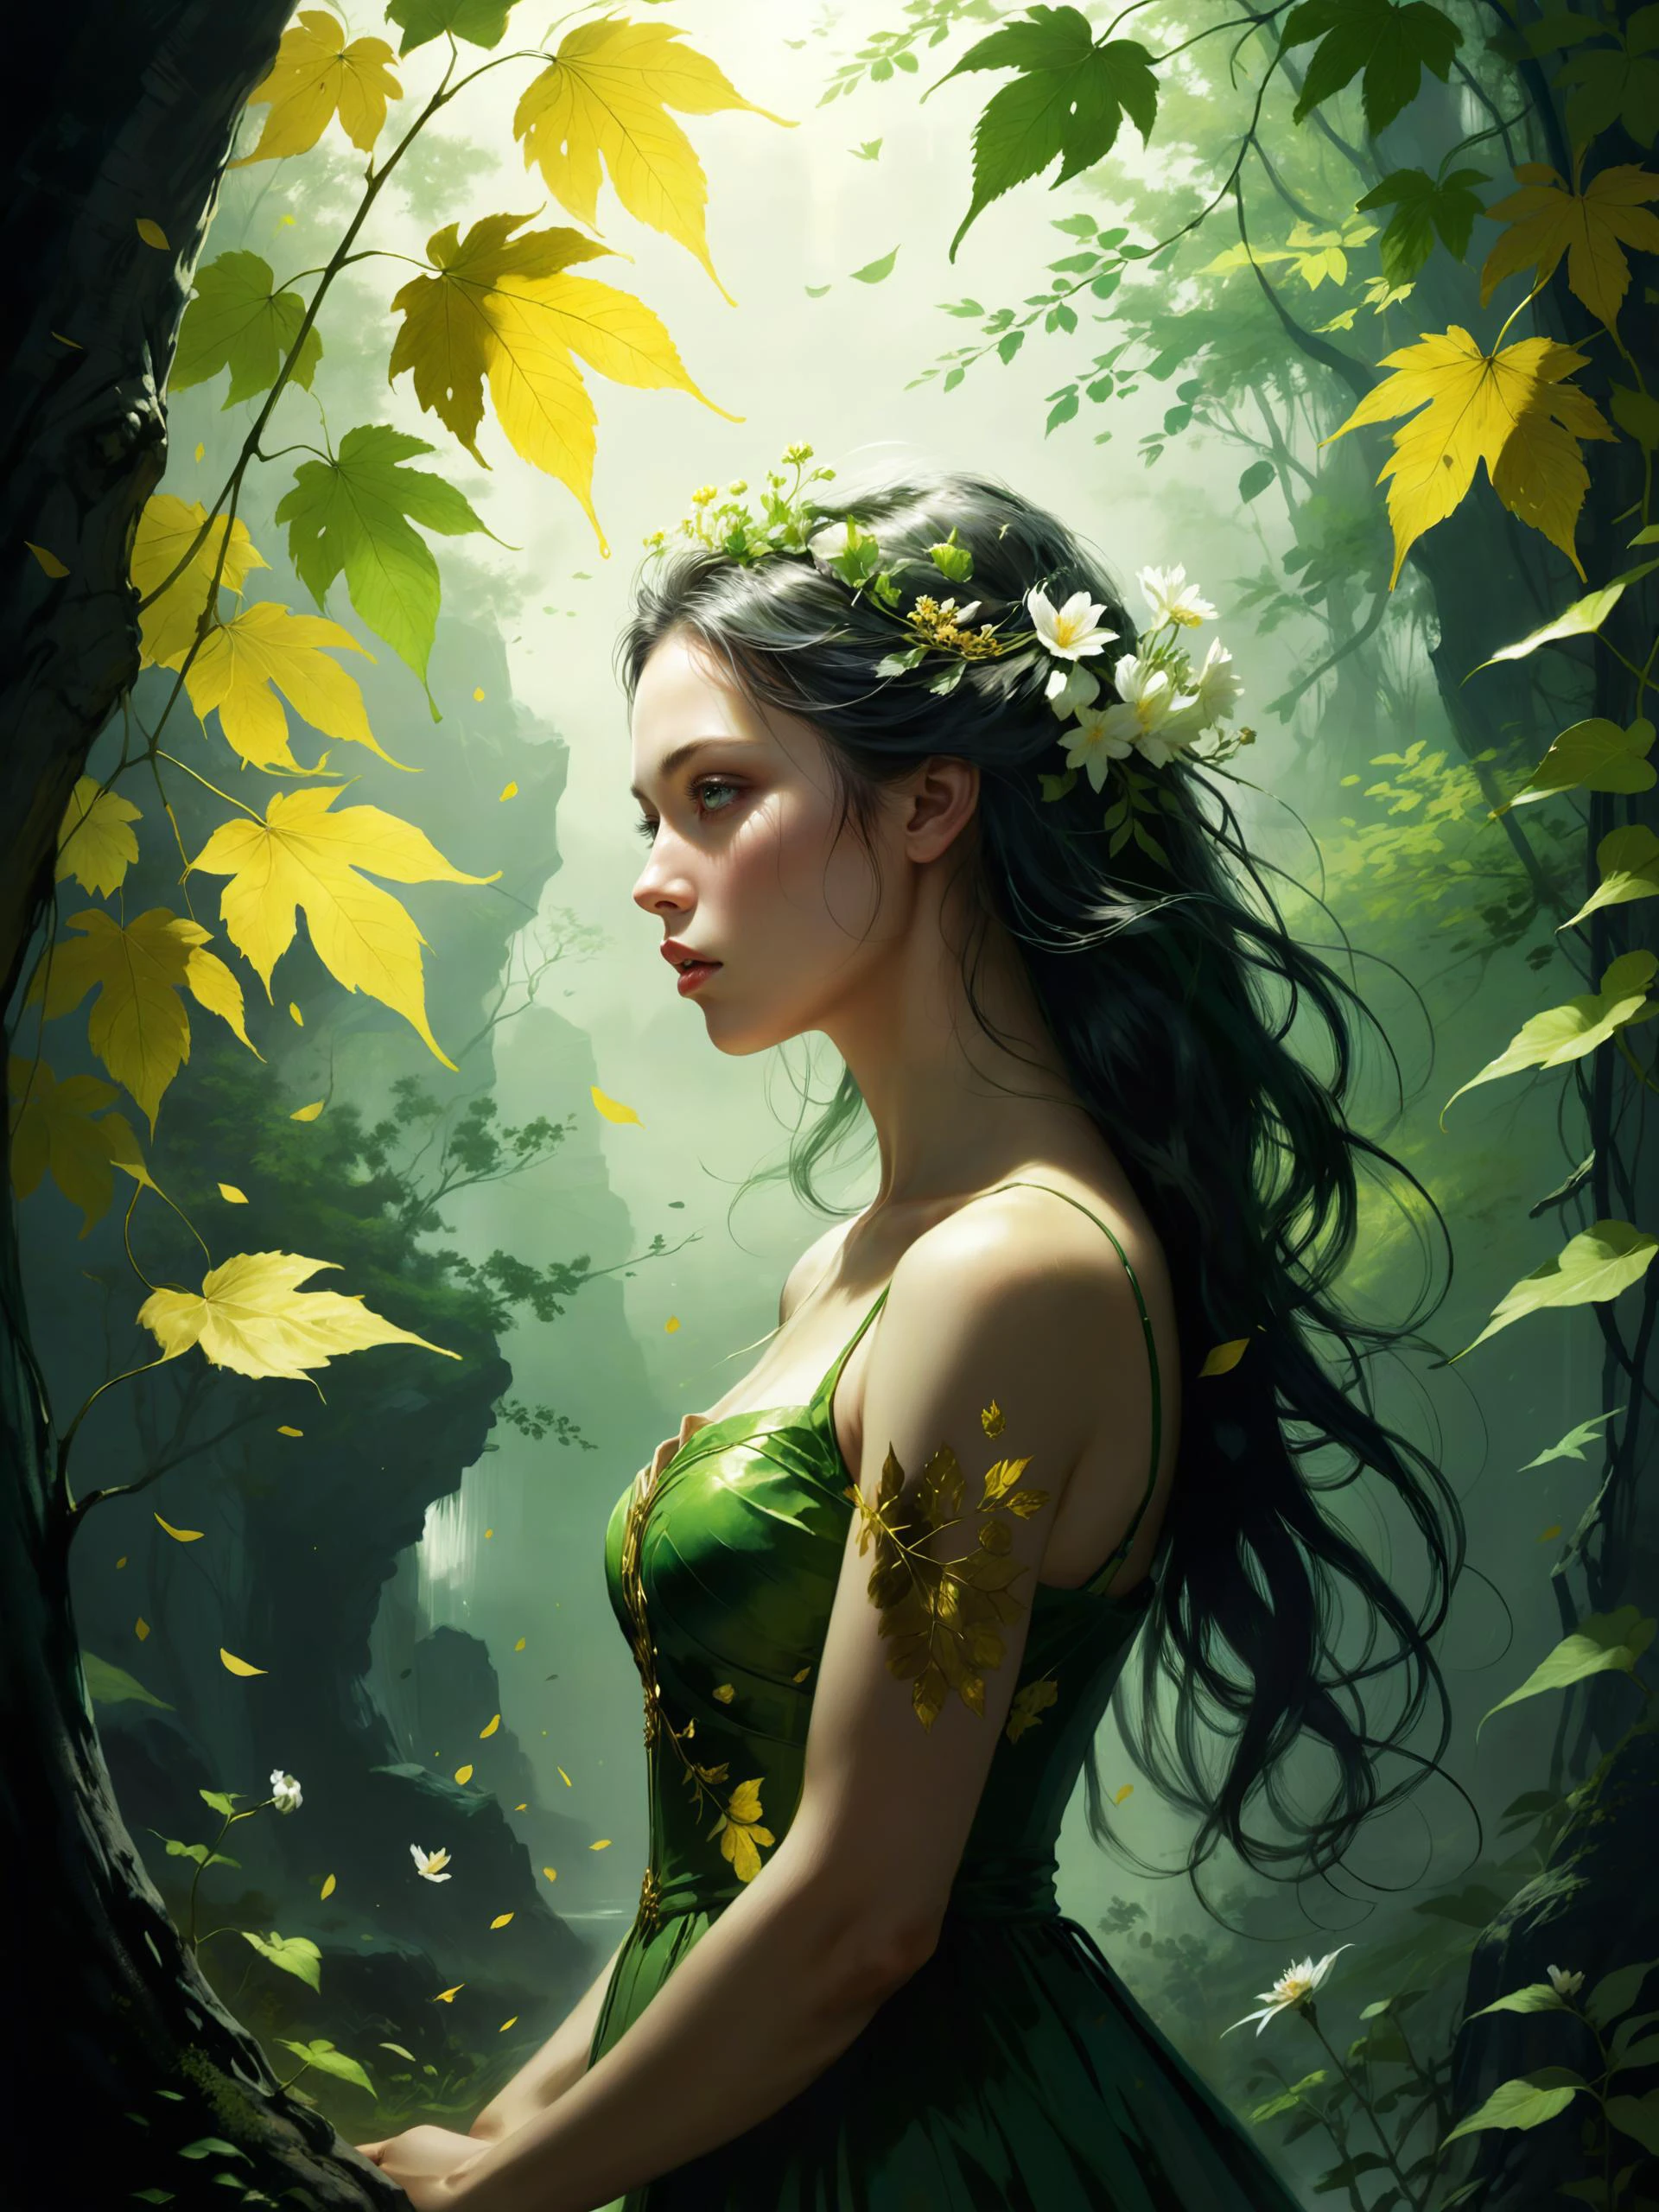 自然の最初の緑は金色, 彼女の最も保ちにくい色, 彼女の初期の葉は花です, しかし、それは1時間だけ, そして葉は葉に収まる, それでエデンは悲しみに沈んだ, 夜明けは昼へと移り変わる, 金は留まらない, まだら模様の光, 有名な芸術作品 (ヨハン・クリスチャン・ダール:1.4) そして (イ・ミンジェ:1.4)